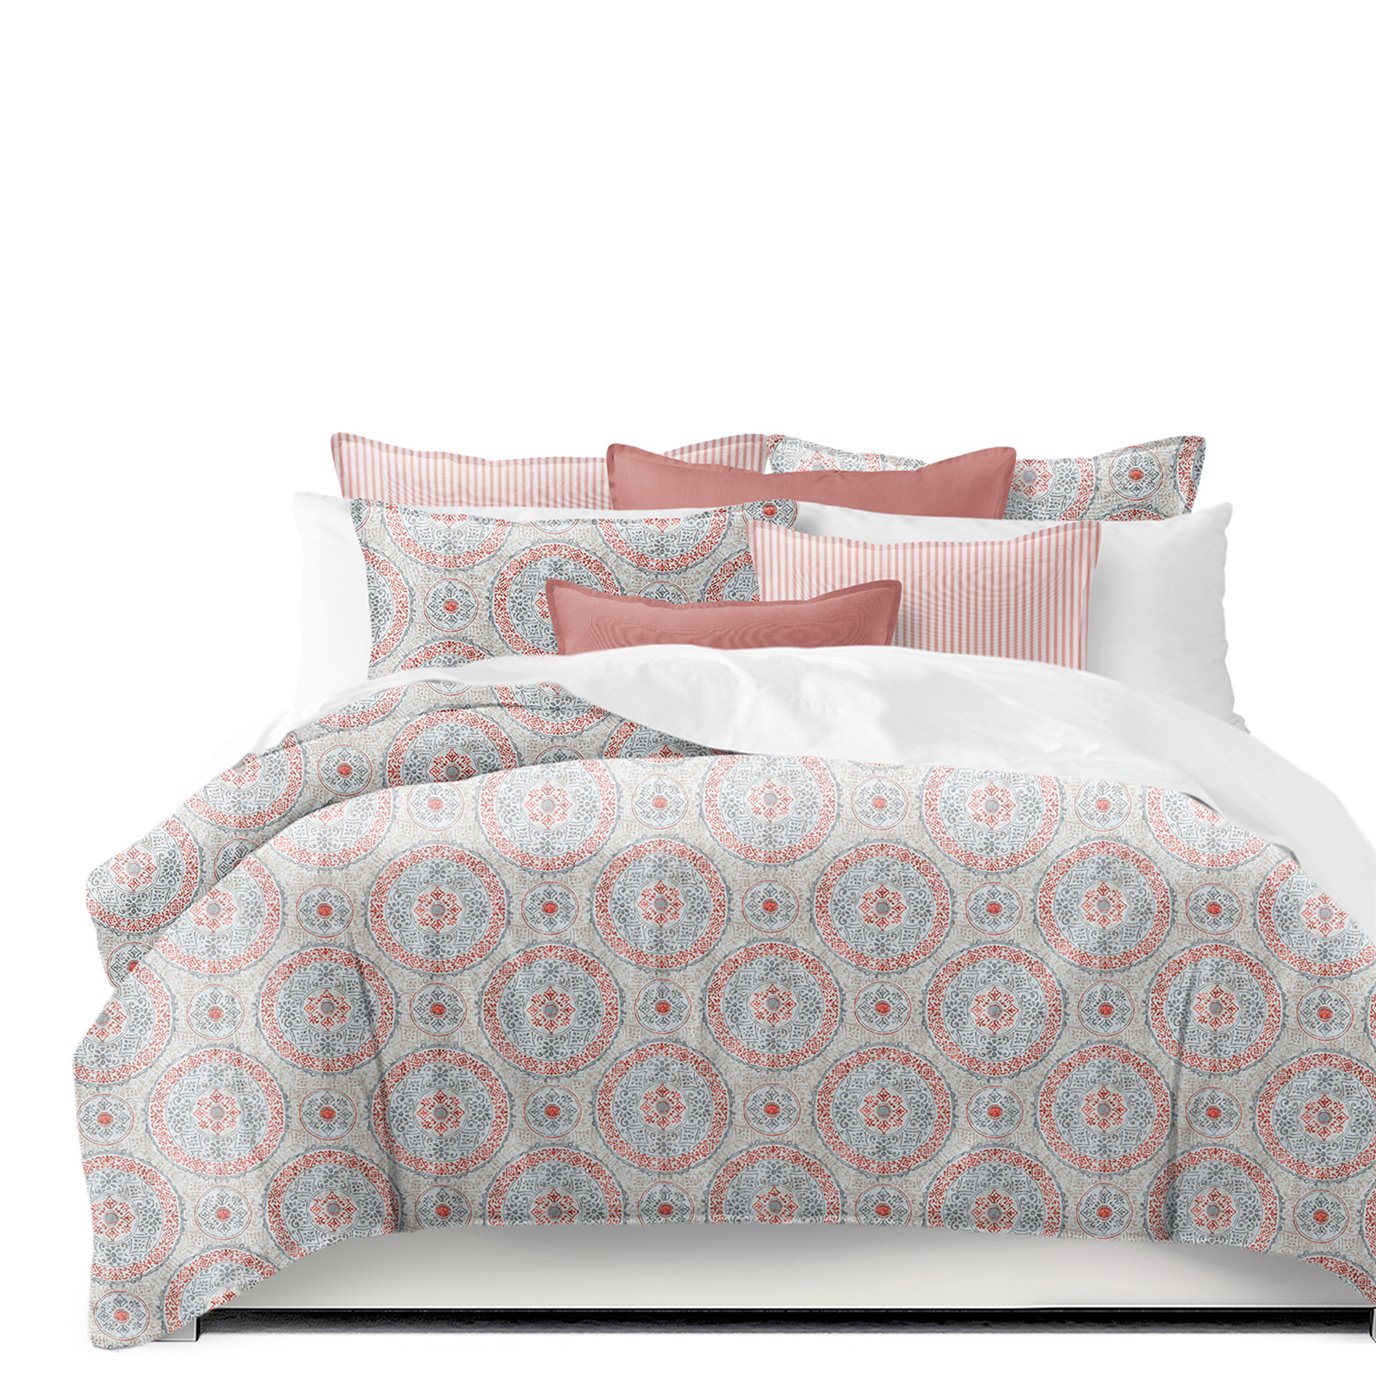 Zayla Coral Super King Comforter & 2 Shams Set